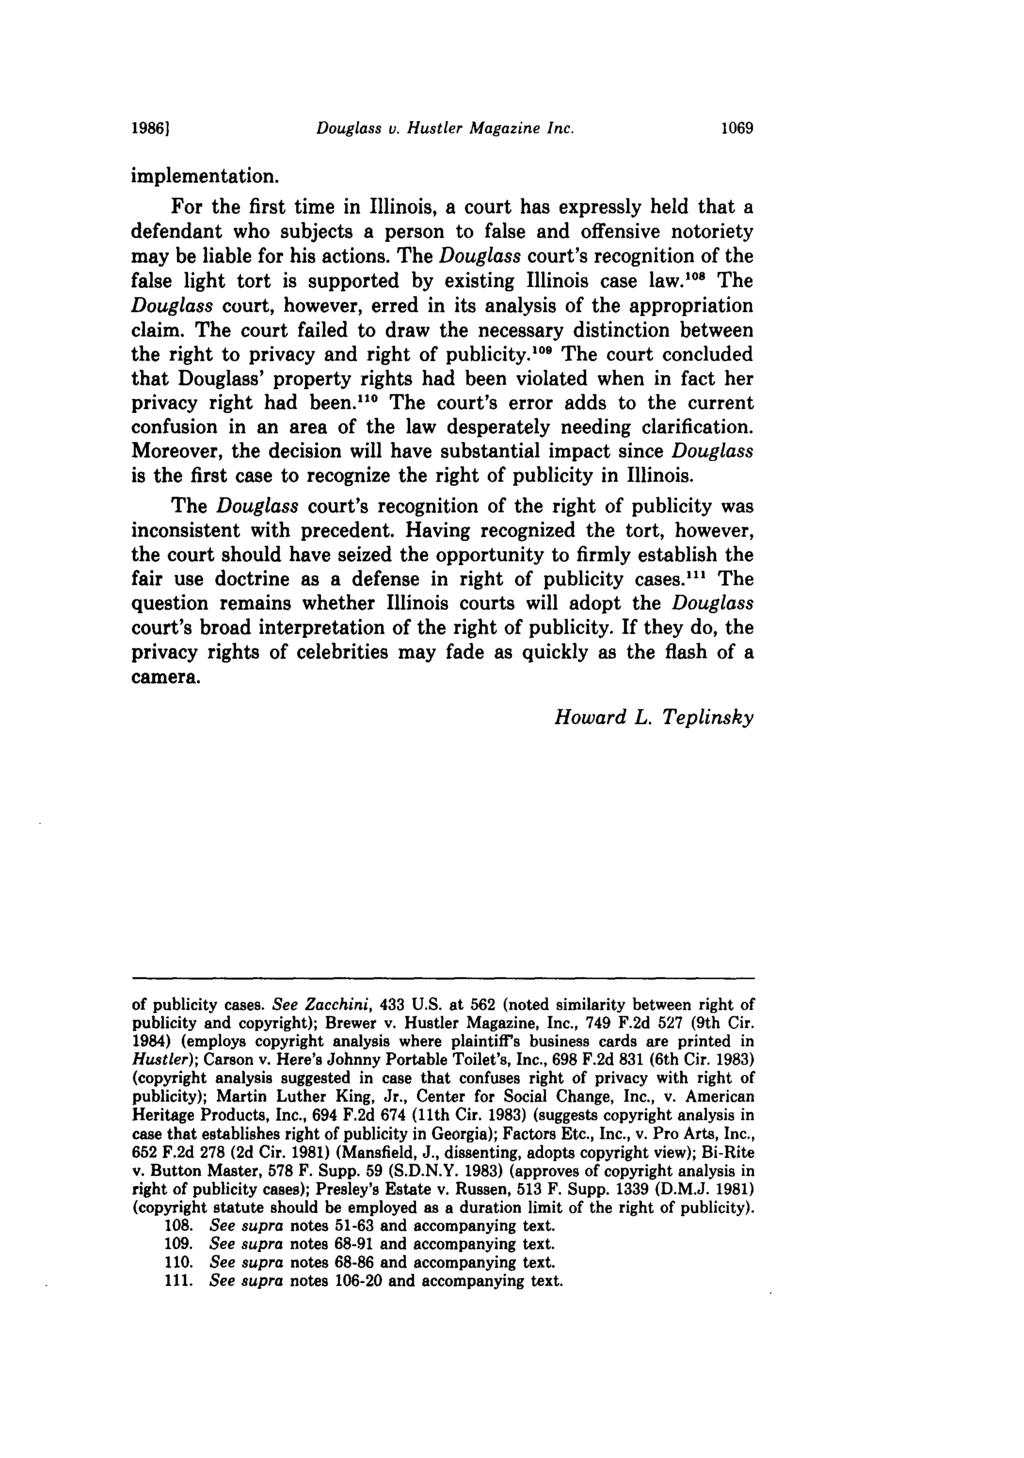 19861 Douglass v. Hustler Magazine Inc. implementation.